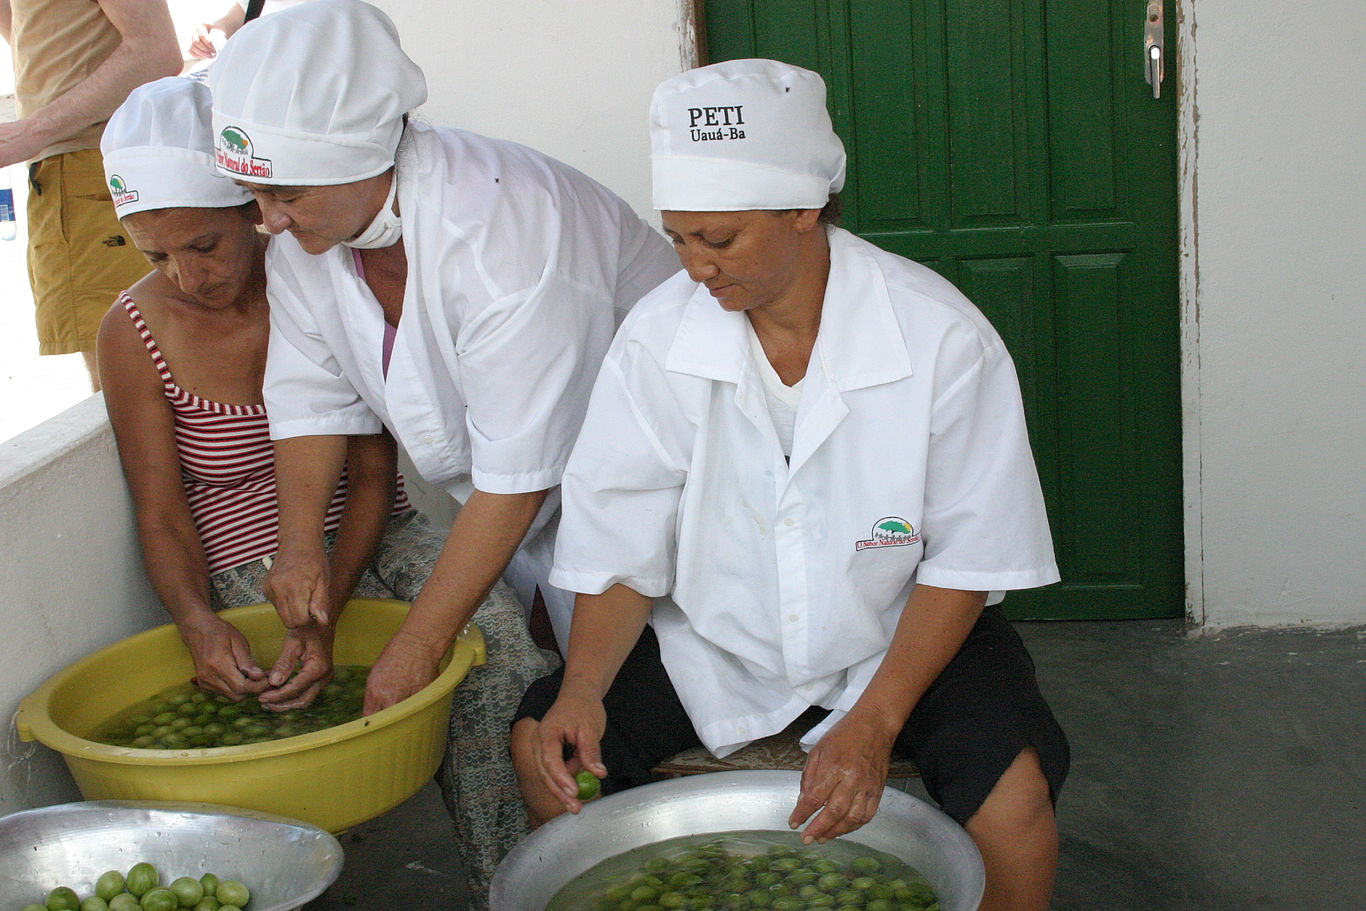 Drei Frauen mit Kochhauben waschen in Schüsseln den Ernteertrag.